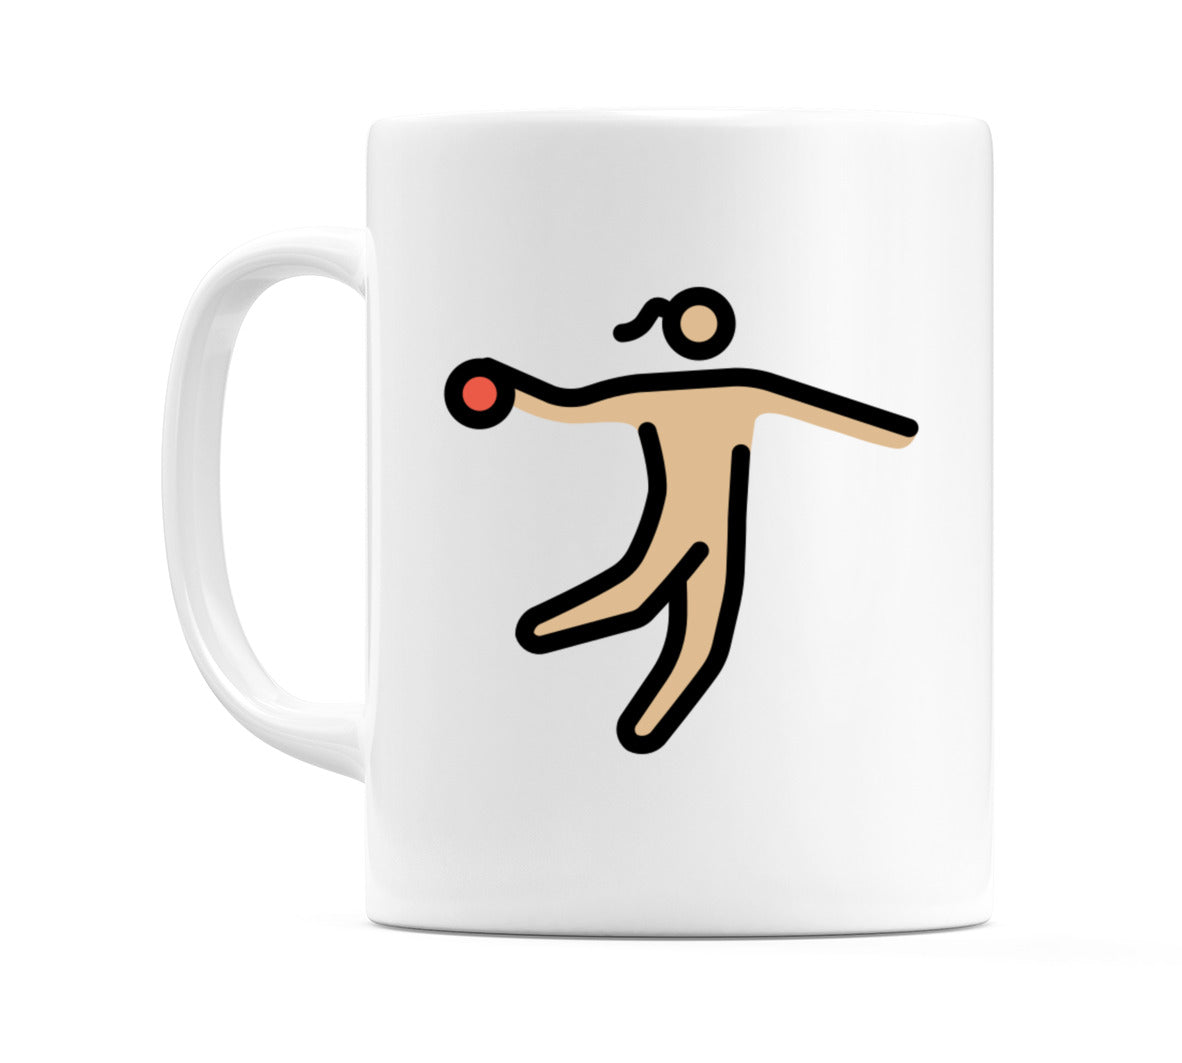 Female Playing Handball: Medium-Light Skin Tone Emoji Mug